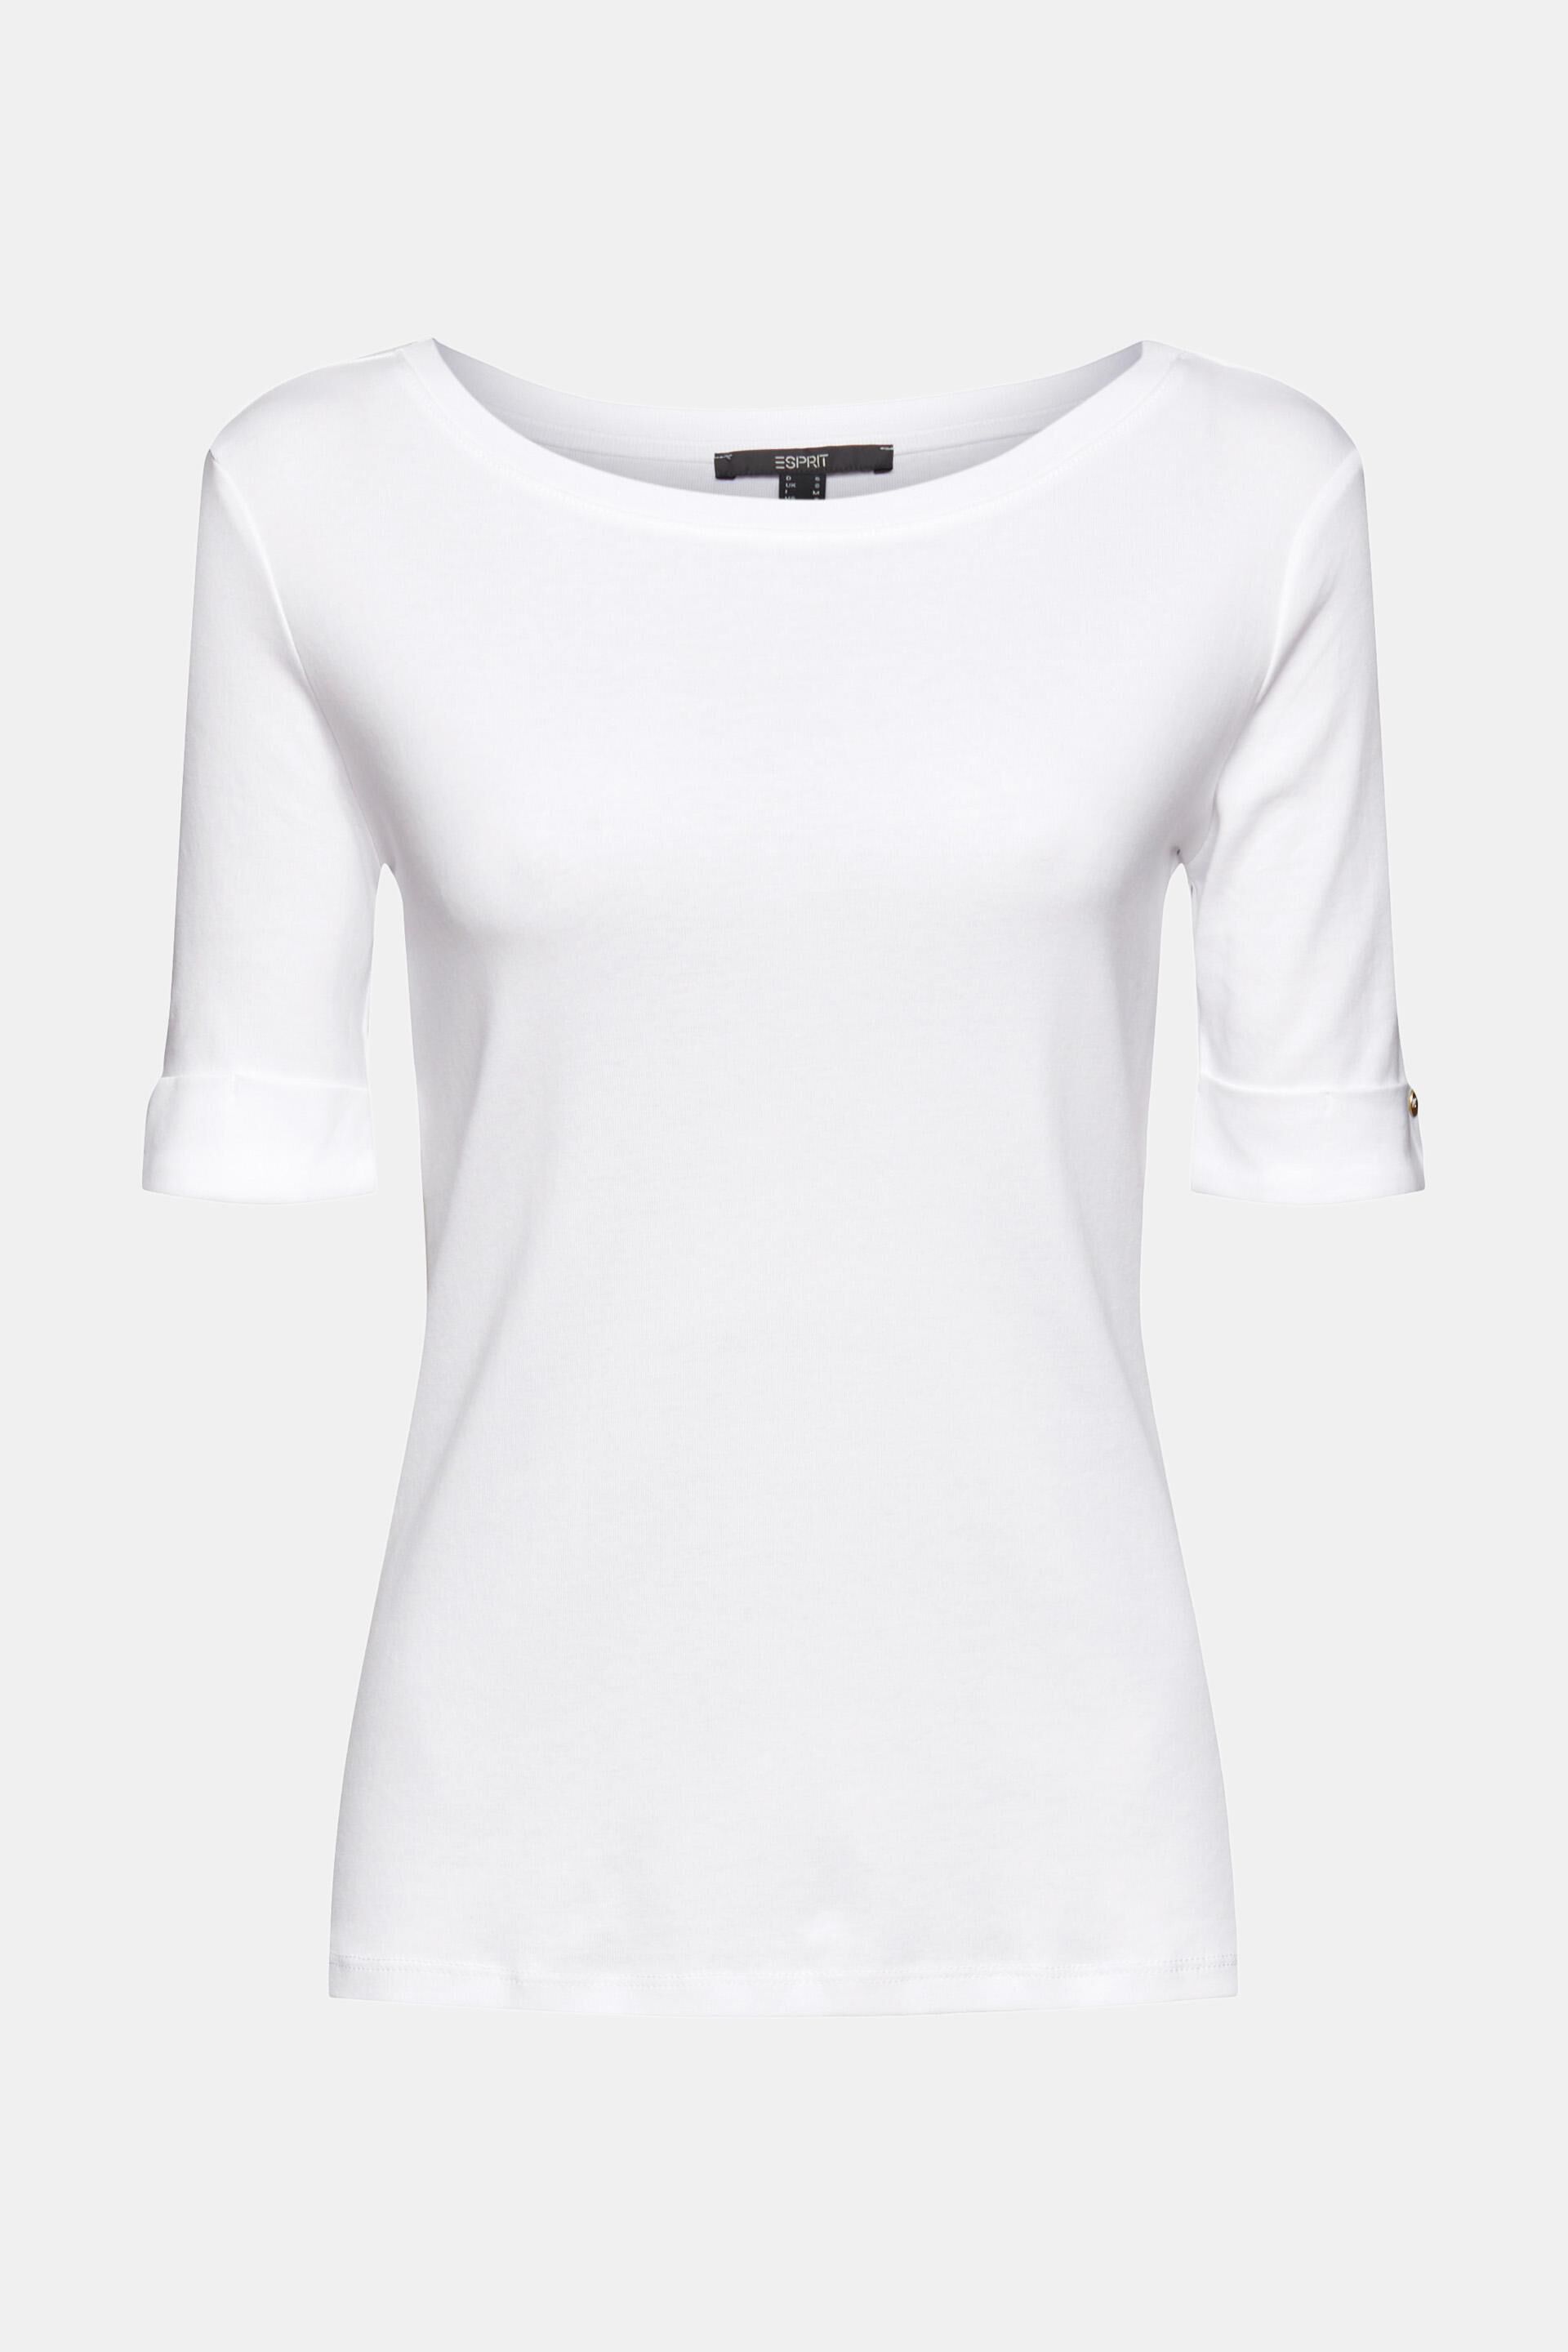 Esprit Damen T-Shirt aus Bio-Baumwolle mit Umschlagbündchen